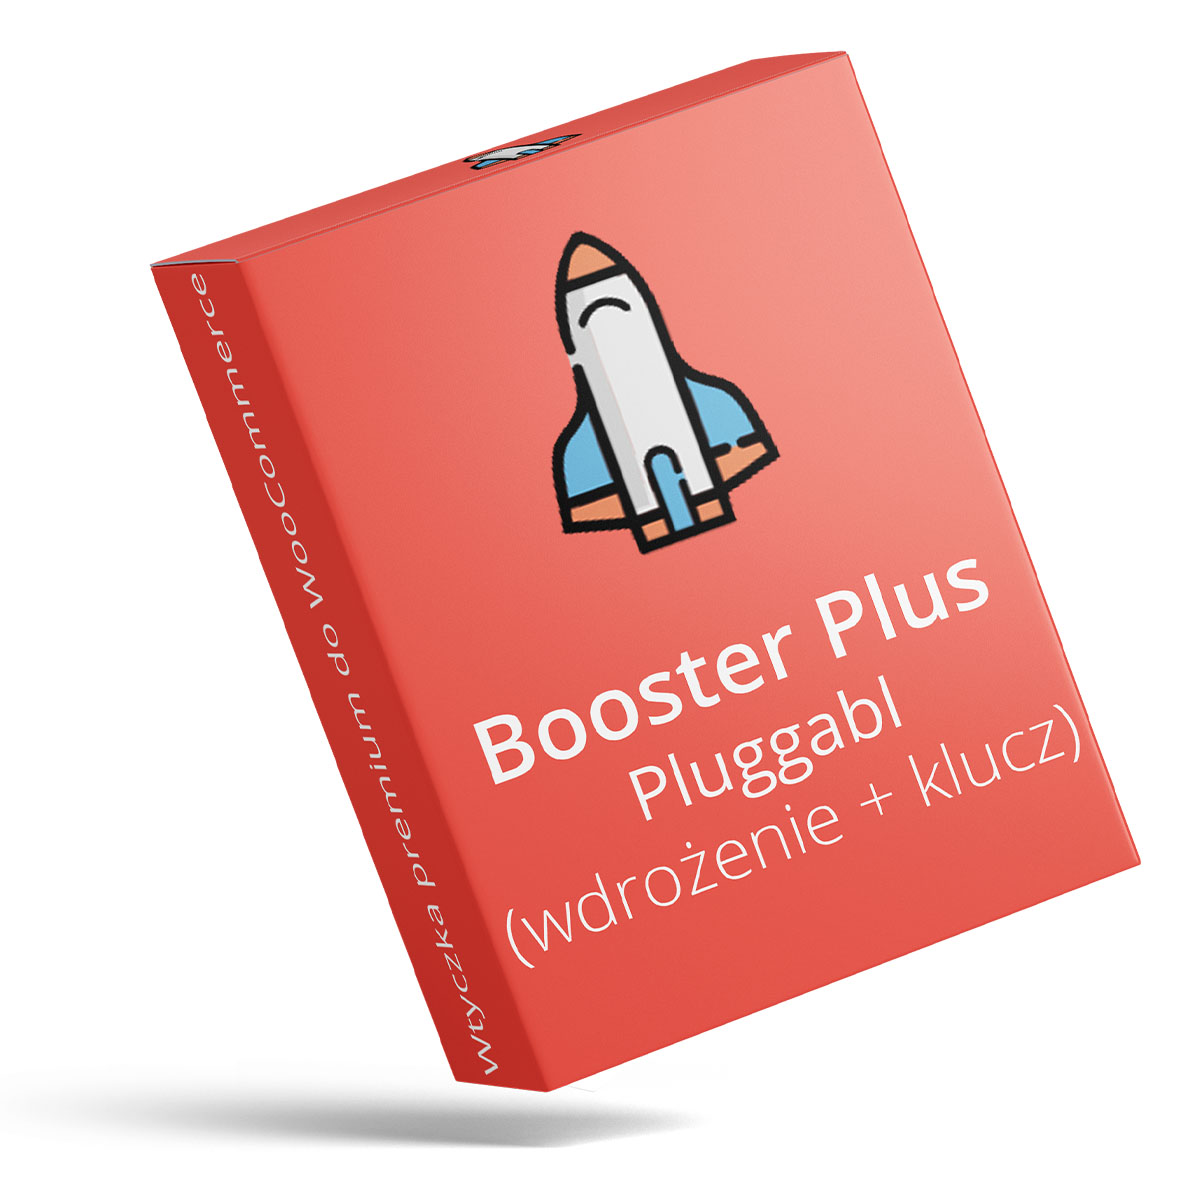 Wdrożenie wtyczki Booster Plus for WooCommerce od Pluggabl